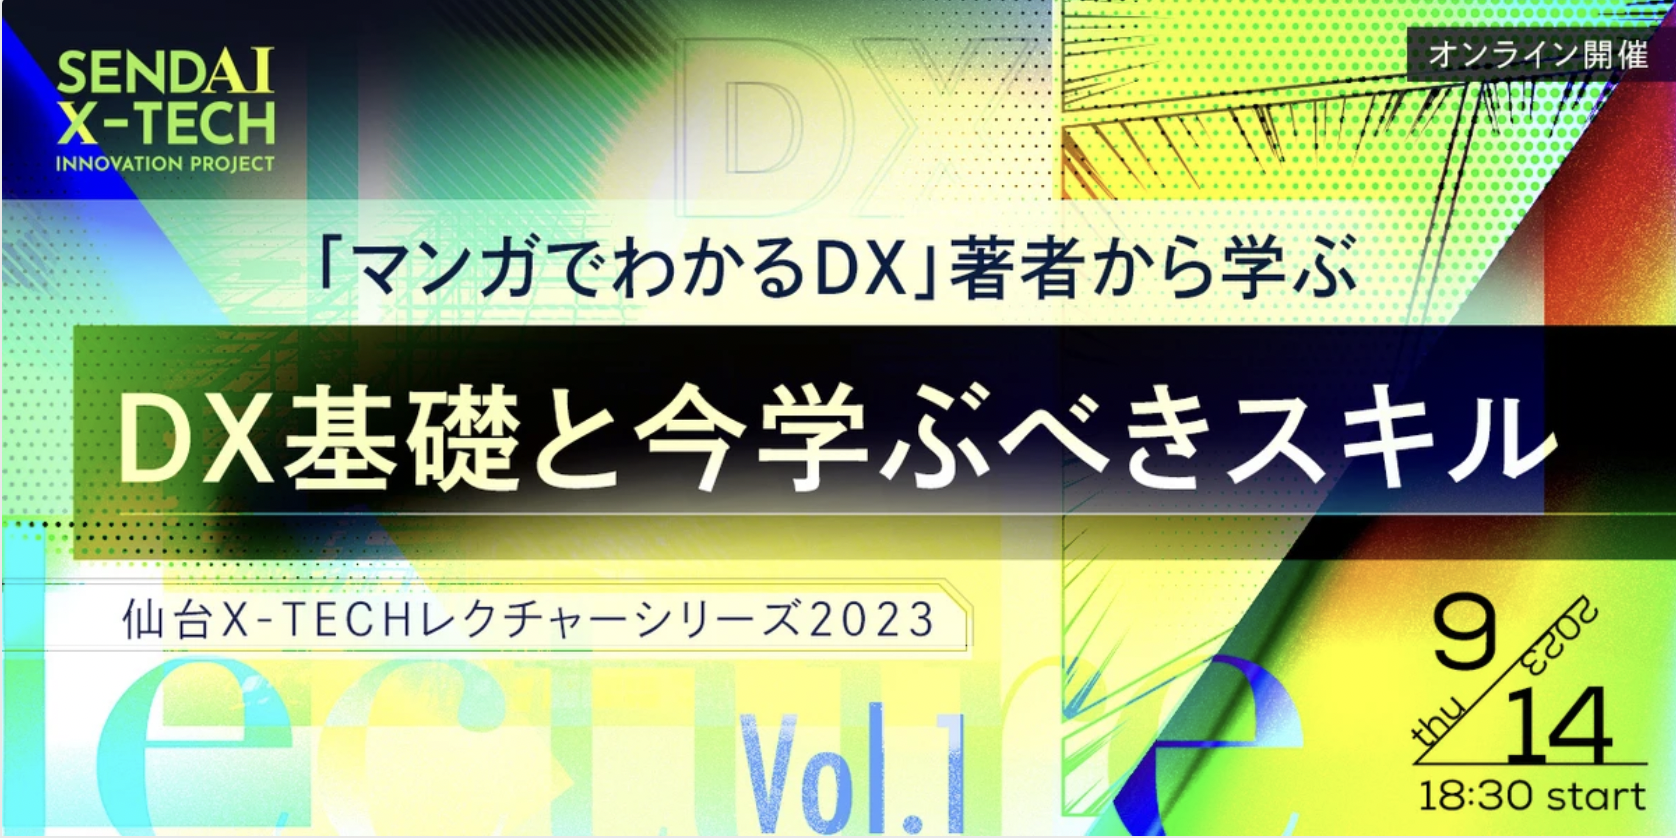 仙台X-TECHレクチャーシリーズ2023 Vol.1 「マンガでわかるDX」著者から学ぶDX基礎と今学ぶべきスキル